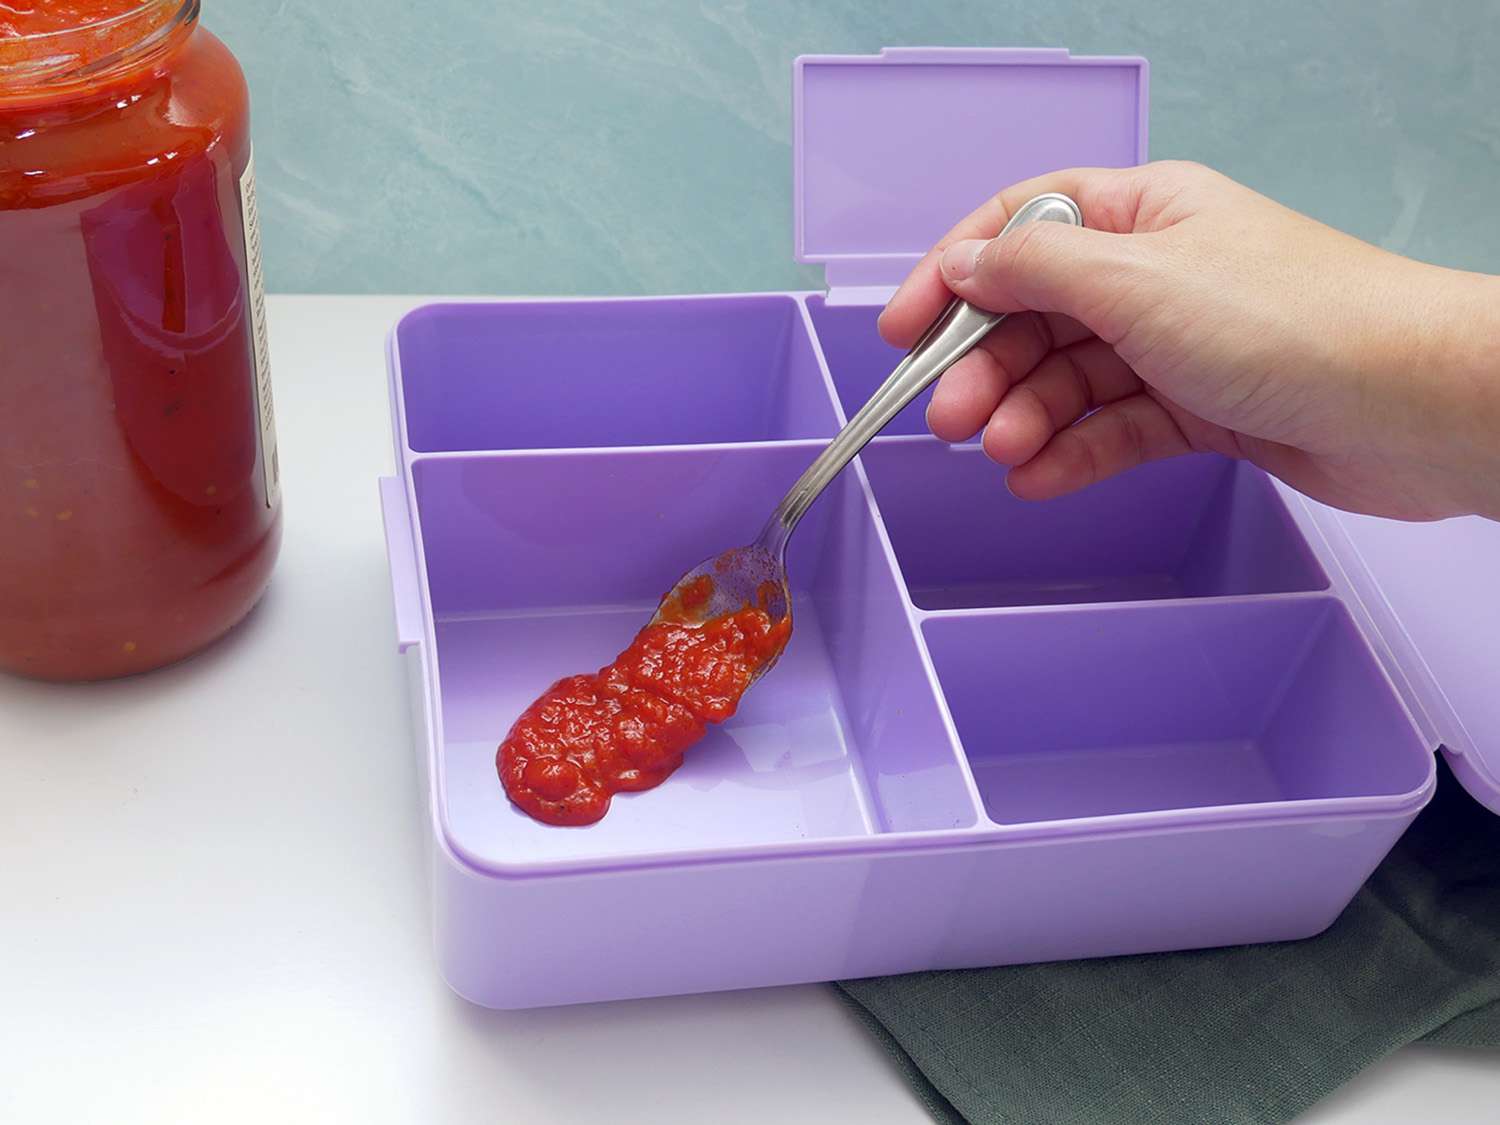 将一勺番茄酱放入陶器谷仓便当盒中进行染色测试。